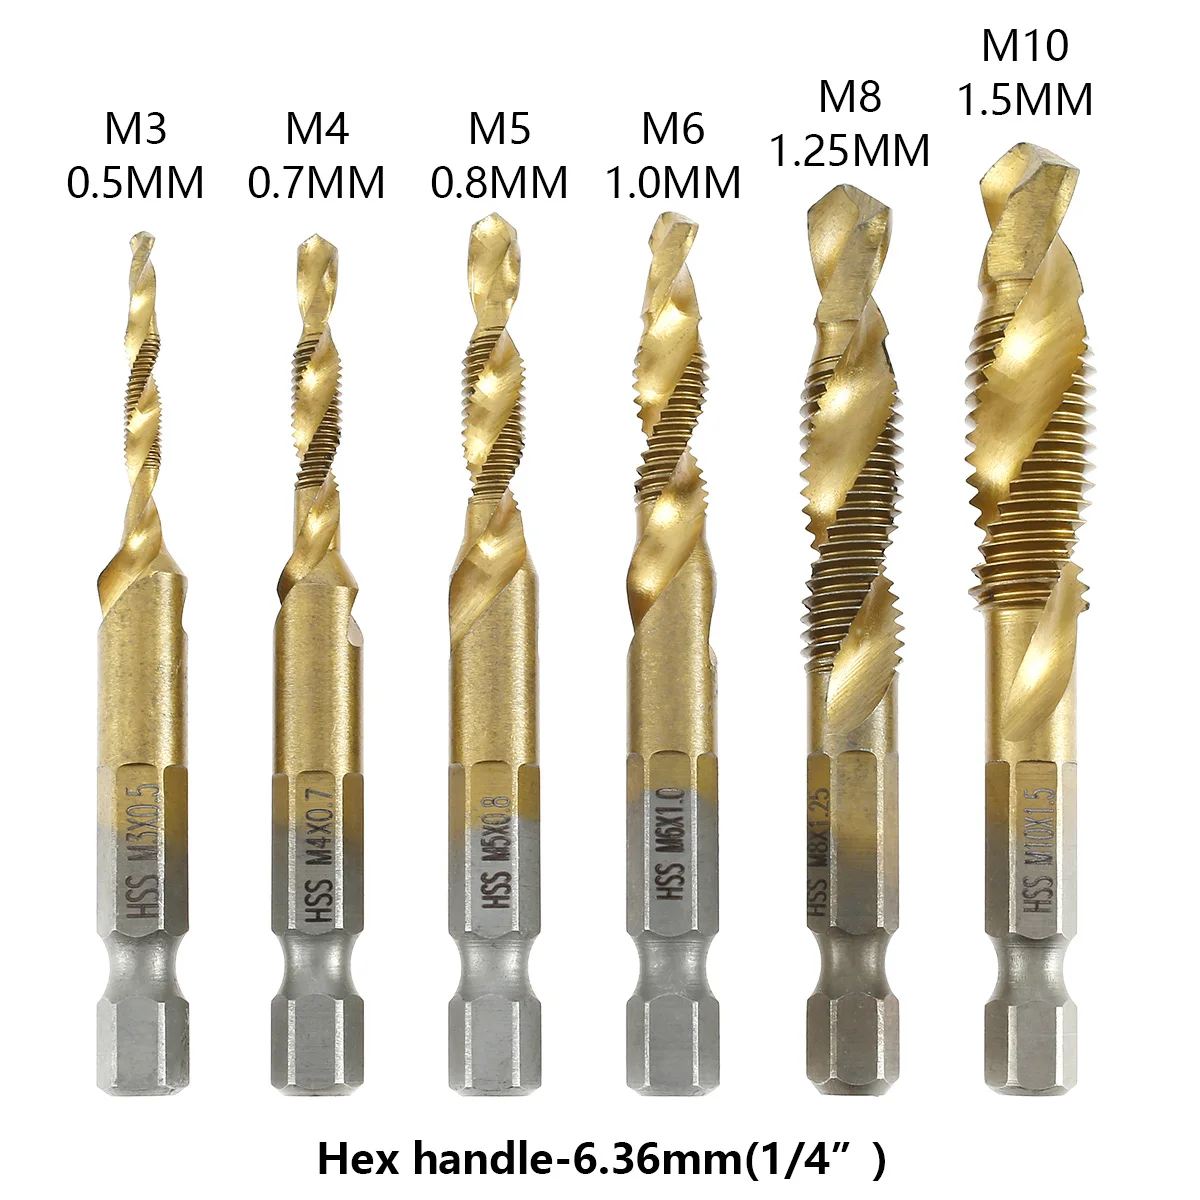 Details about   HSS Screw Tap Set Titanium Combination Twist Drill Bit Hex Shank Metal Tool Kits 